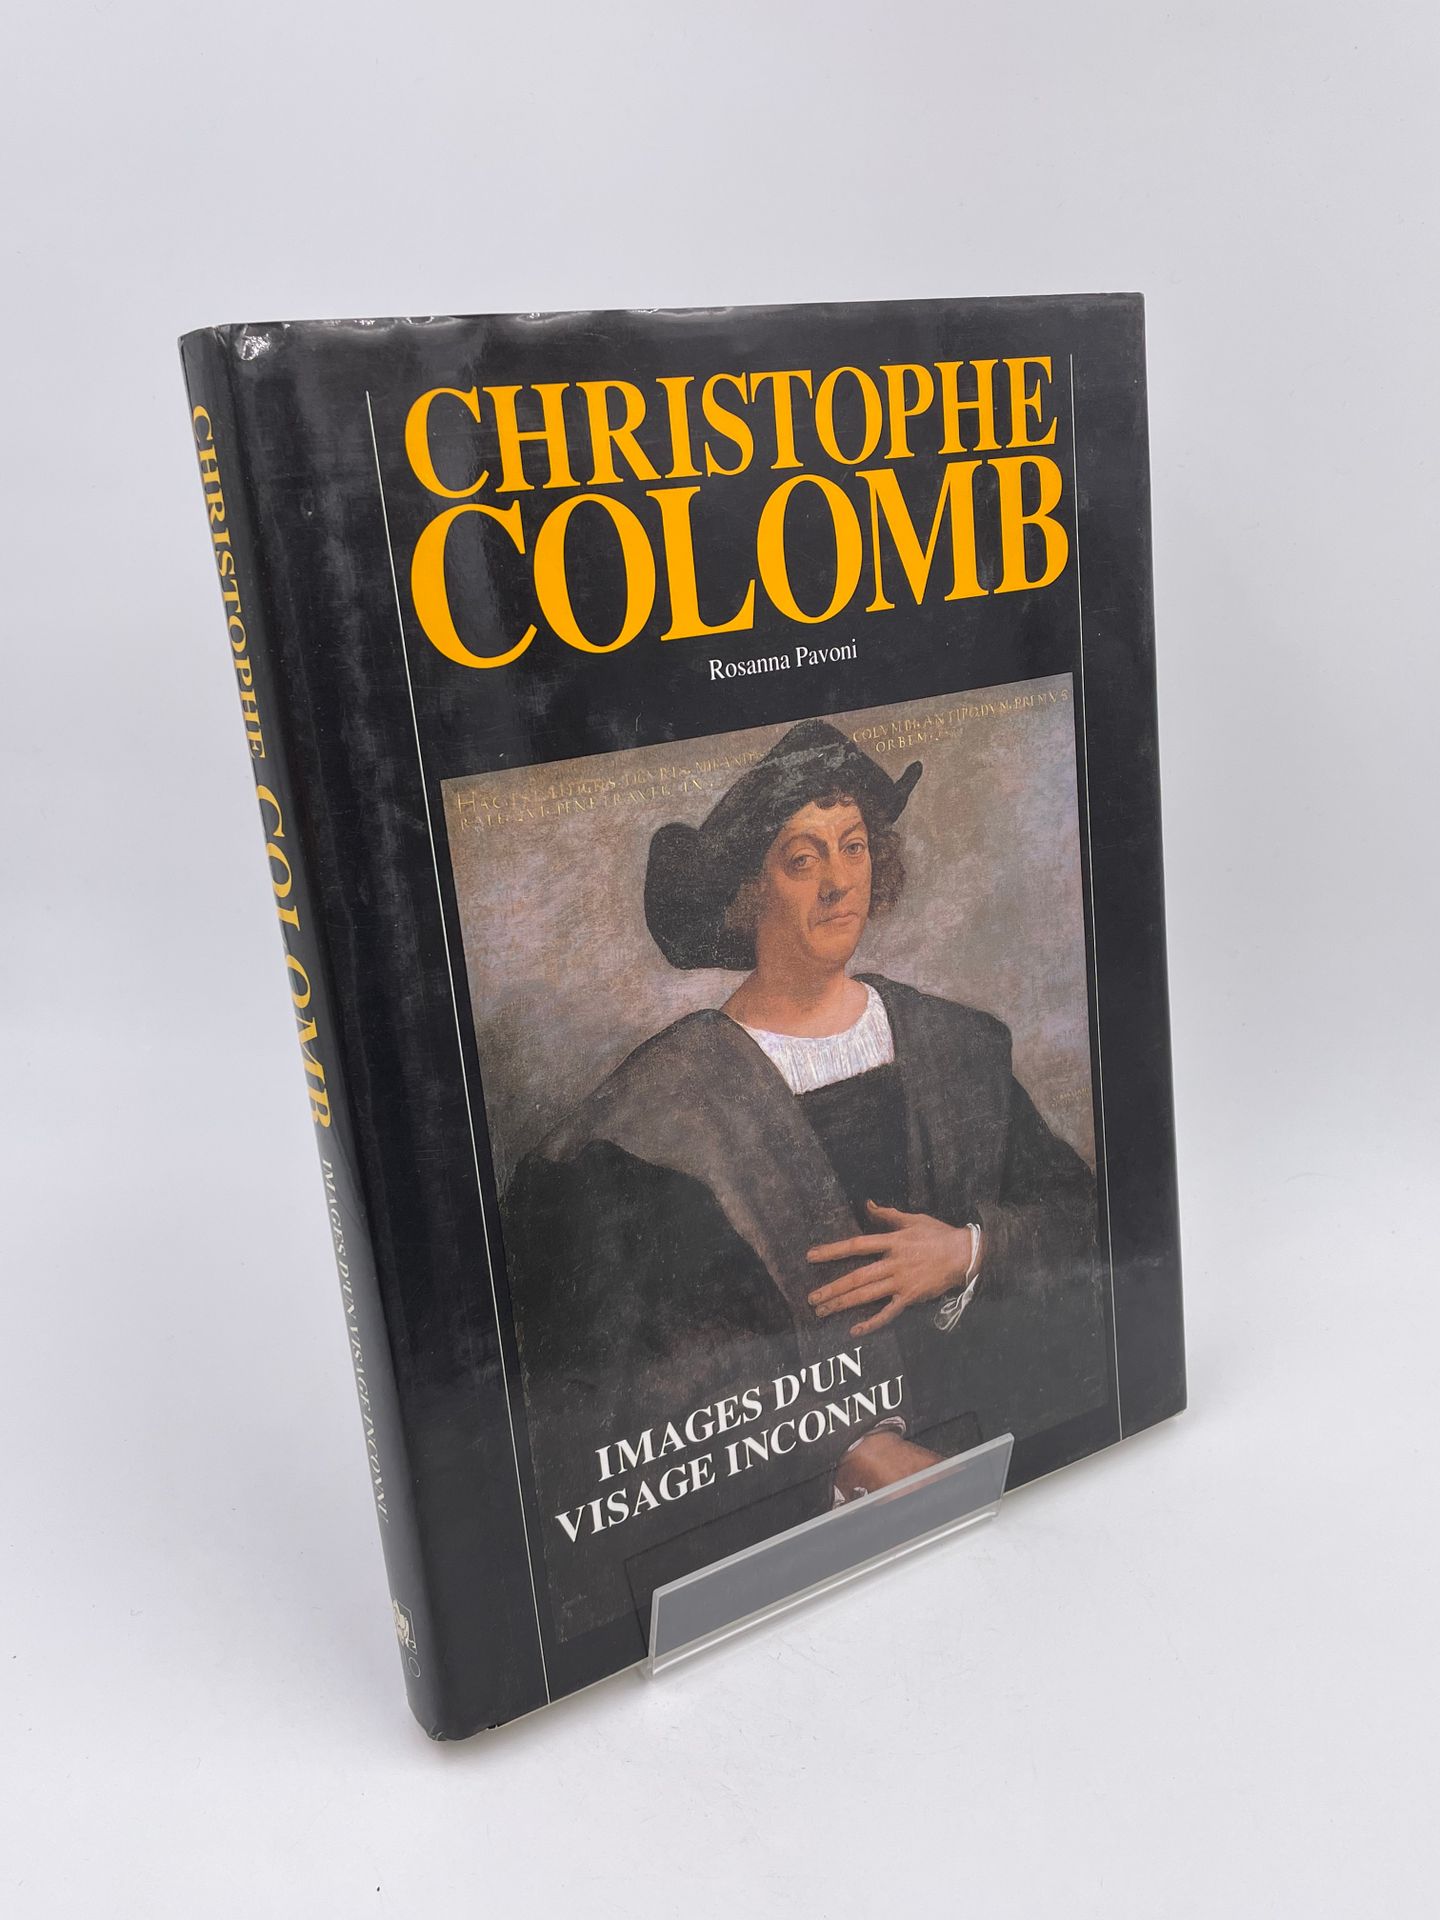 Null 1 Volume : "CHISTOPHE COLOMB, IMAGES D'UN VISAGE INCONNU", Rosanna Pavoni, &hellip;